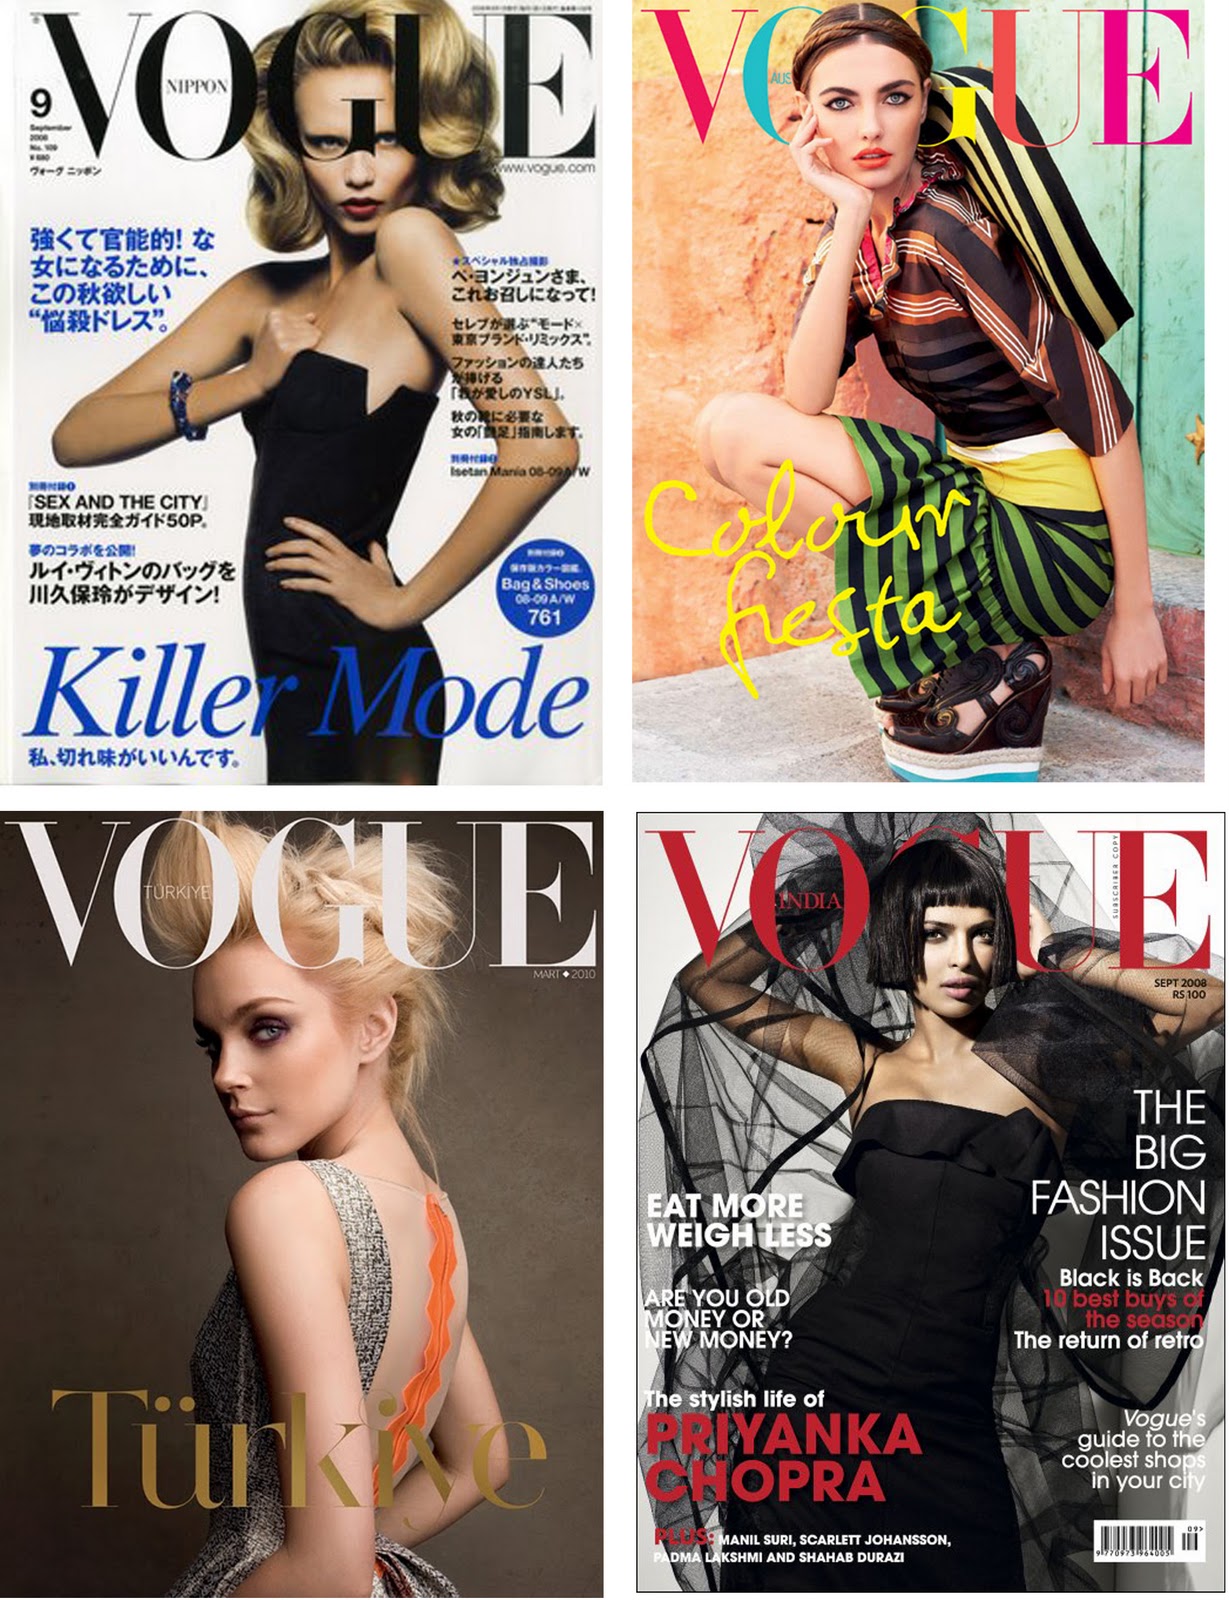 http://2.bp.blogspot.com/-4Zx4Xw7llVc/TnU8OFbrEiI/AAAAAAAADk4/fxbloYCWZWc/s1600/Vogue+covers+around+the+world+5.jpg